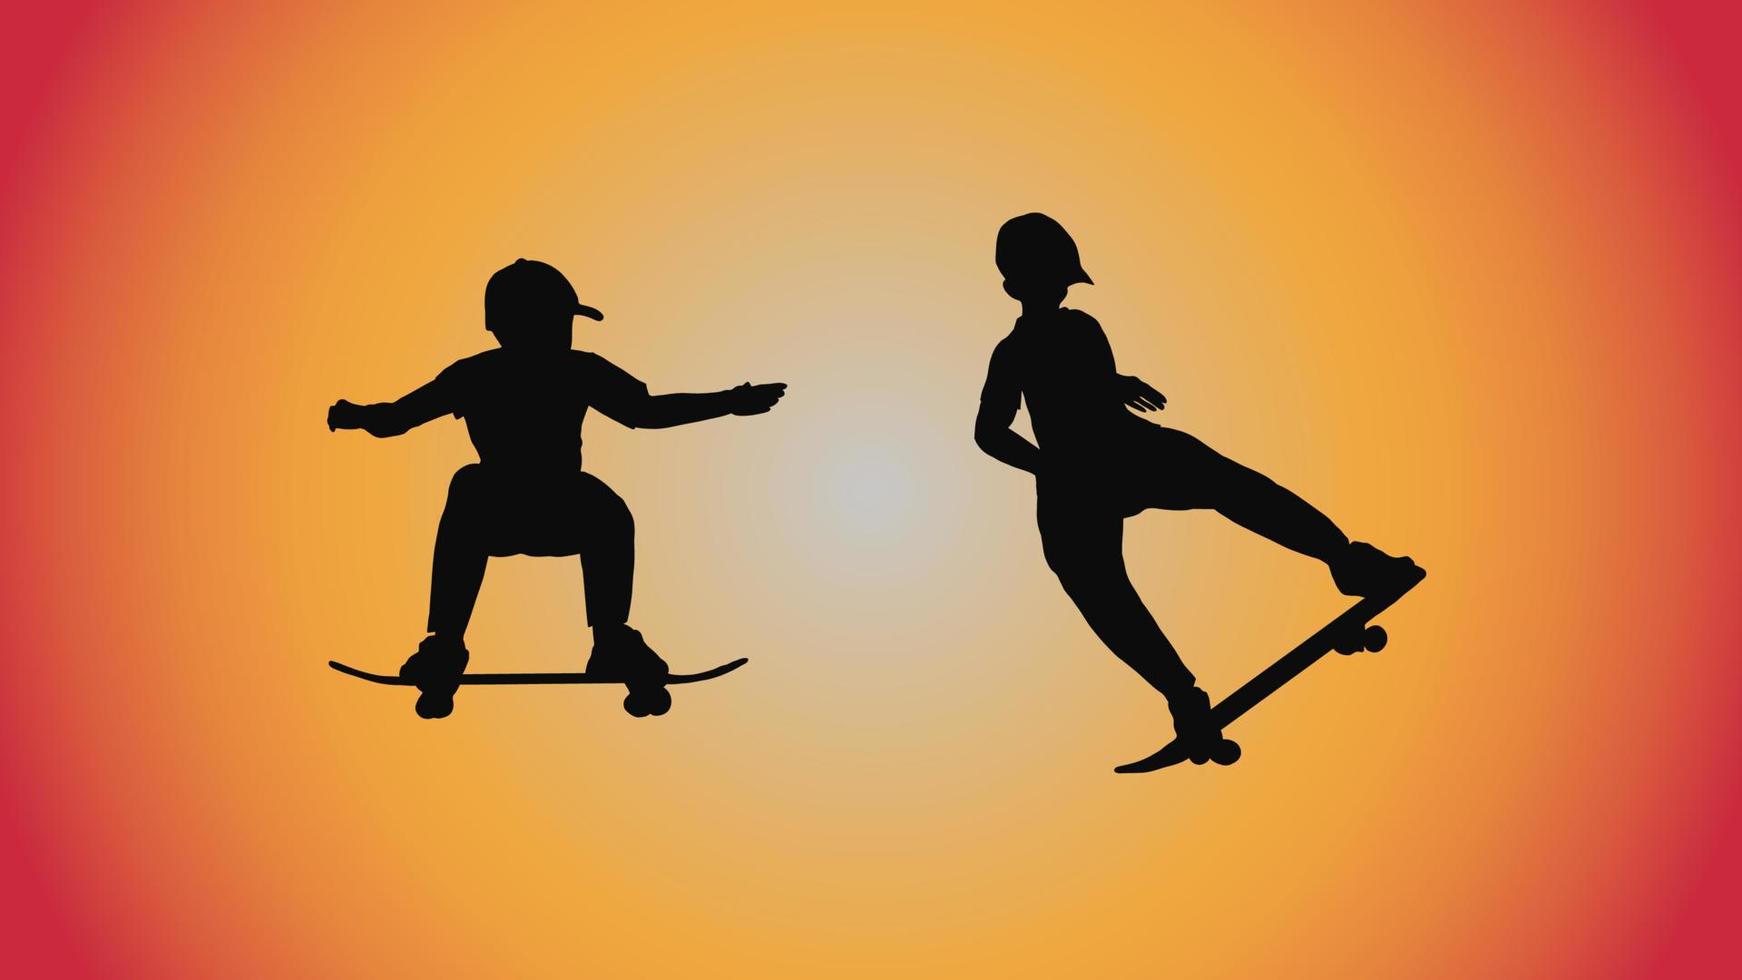 abstrakter hintergrund der silhouette skateboard pose move trick vektor